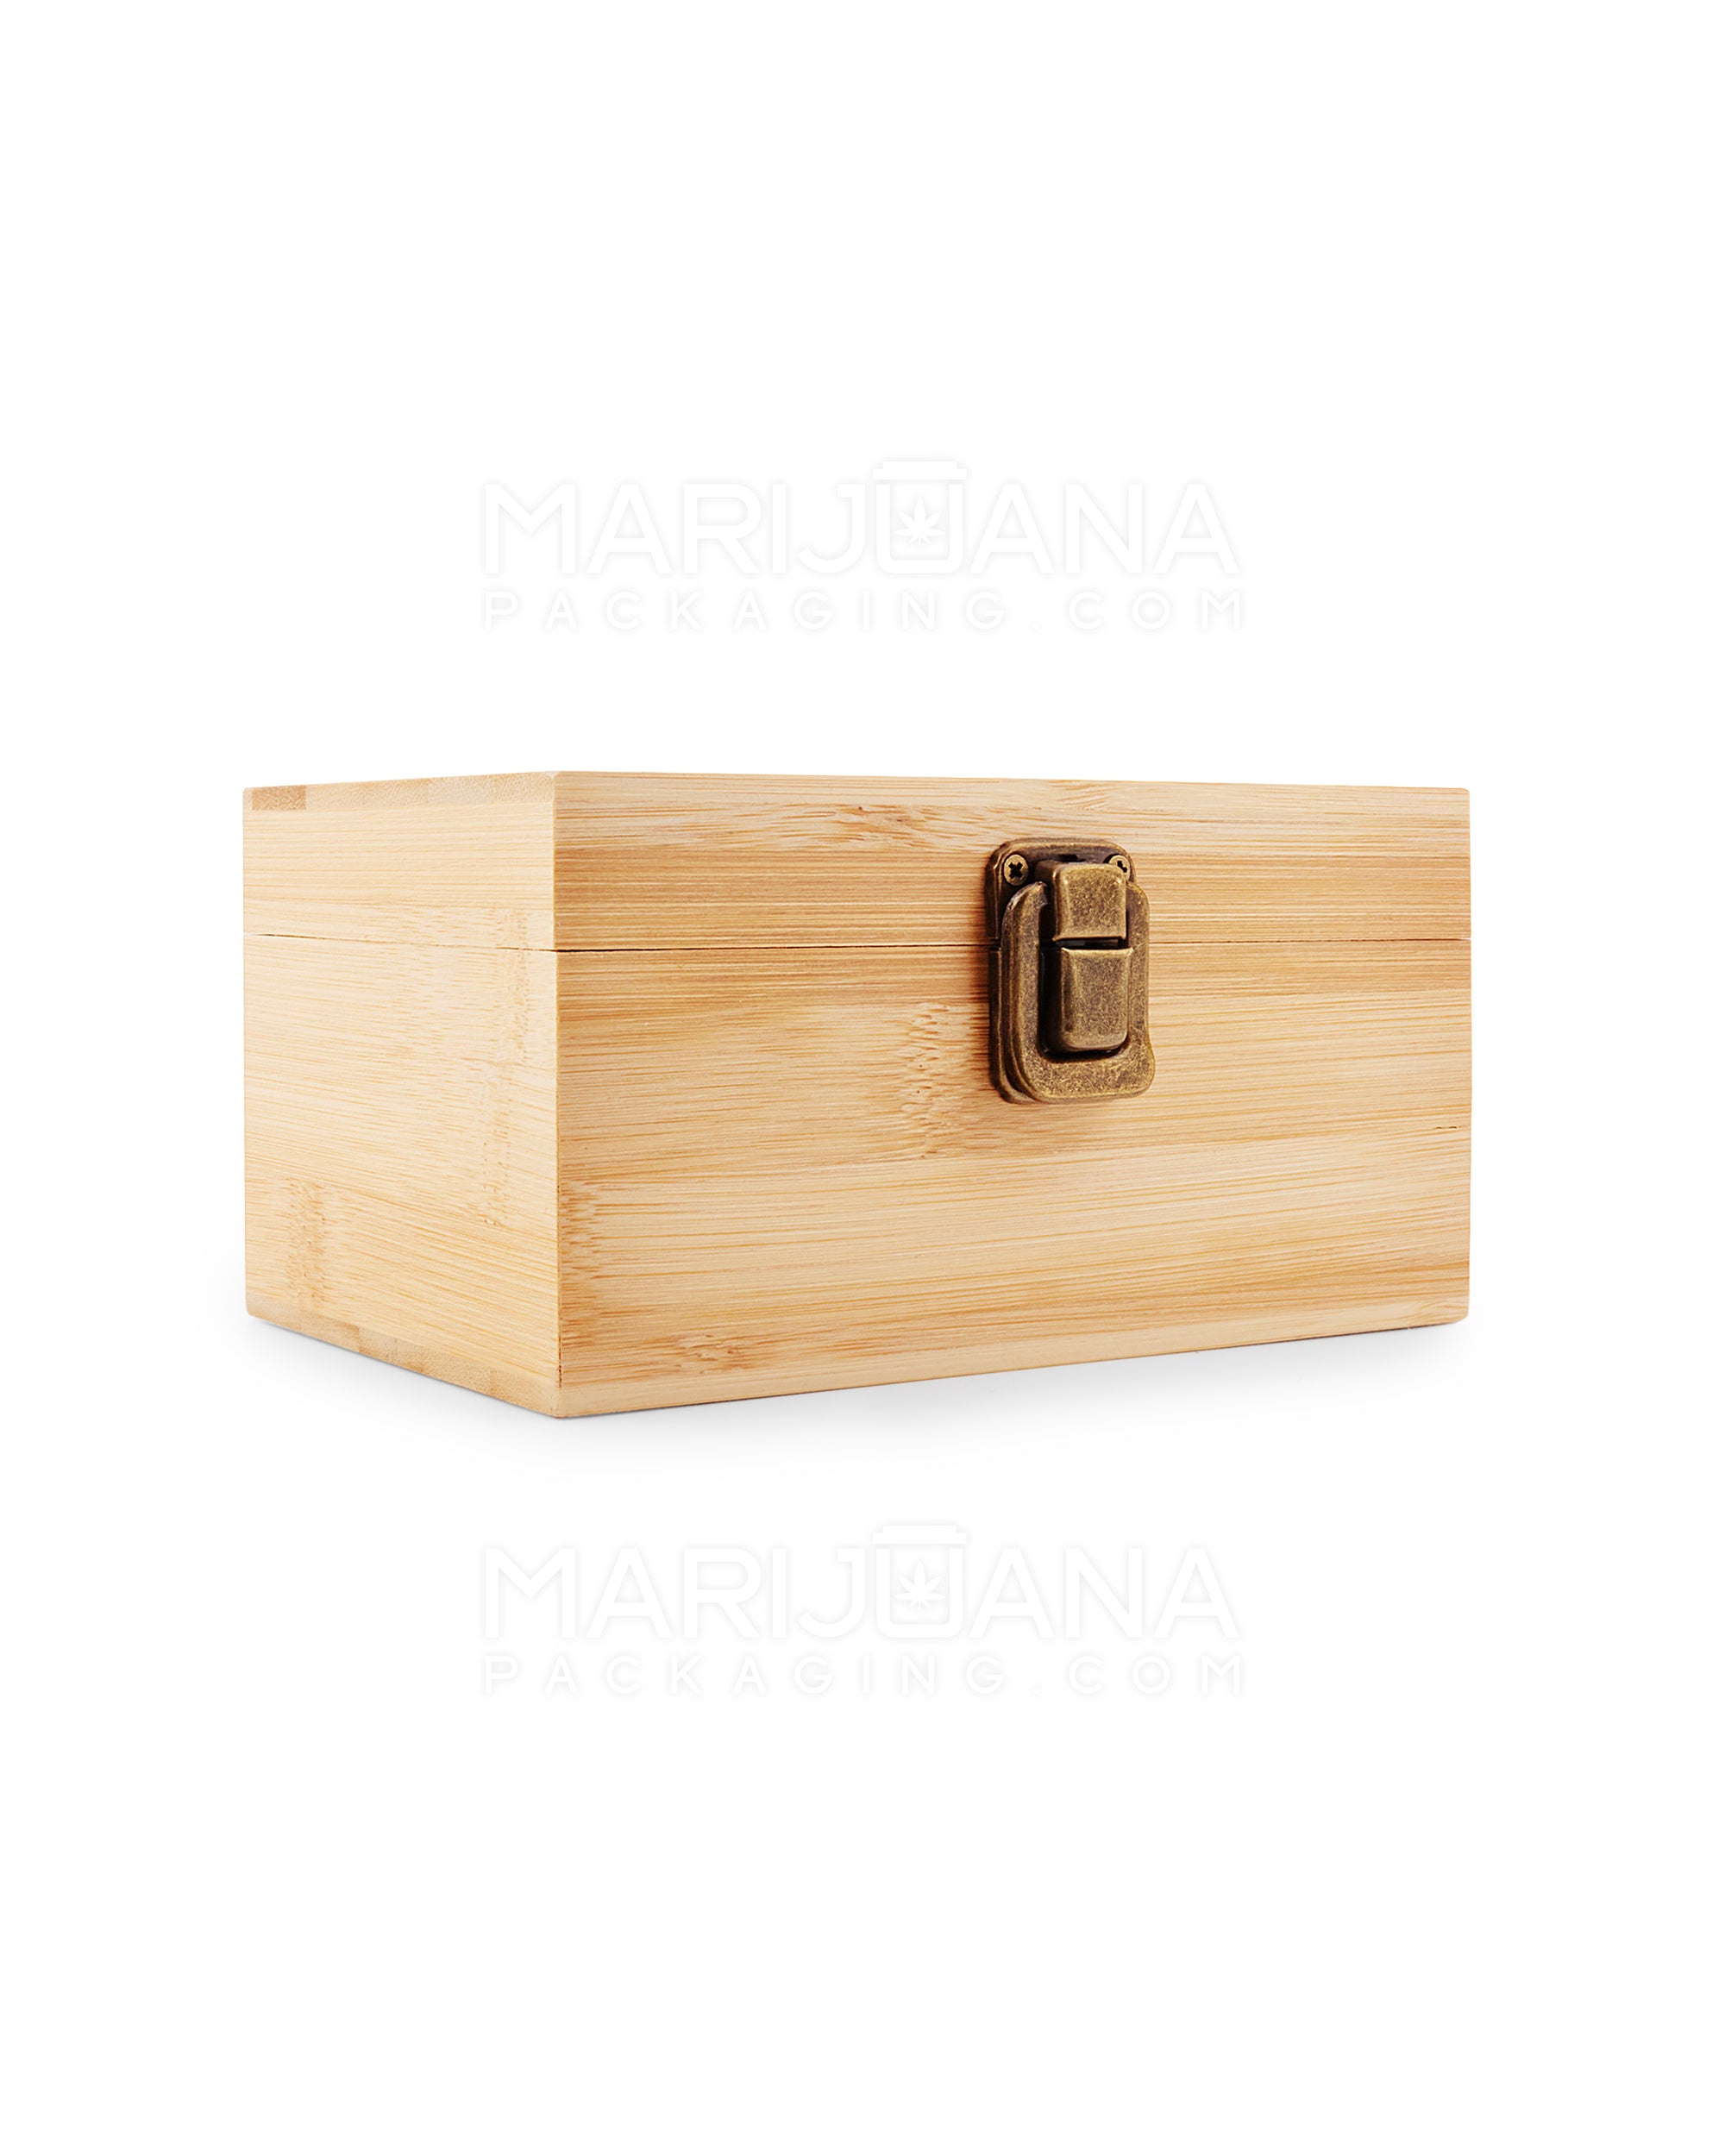 Mushroom Wizard Wooden Latch Lock Stash Box w/ Accessories | 152mm - Wood - 5